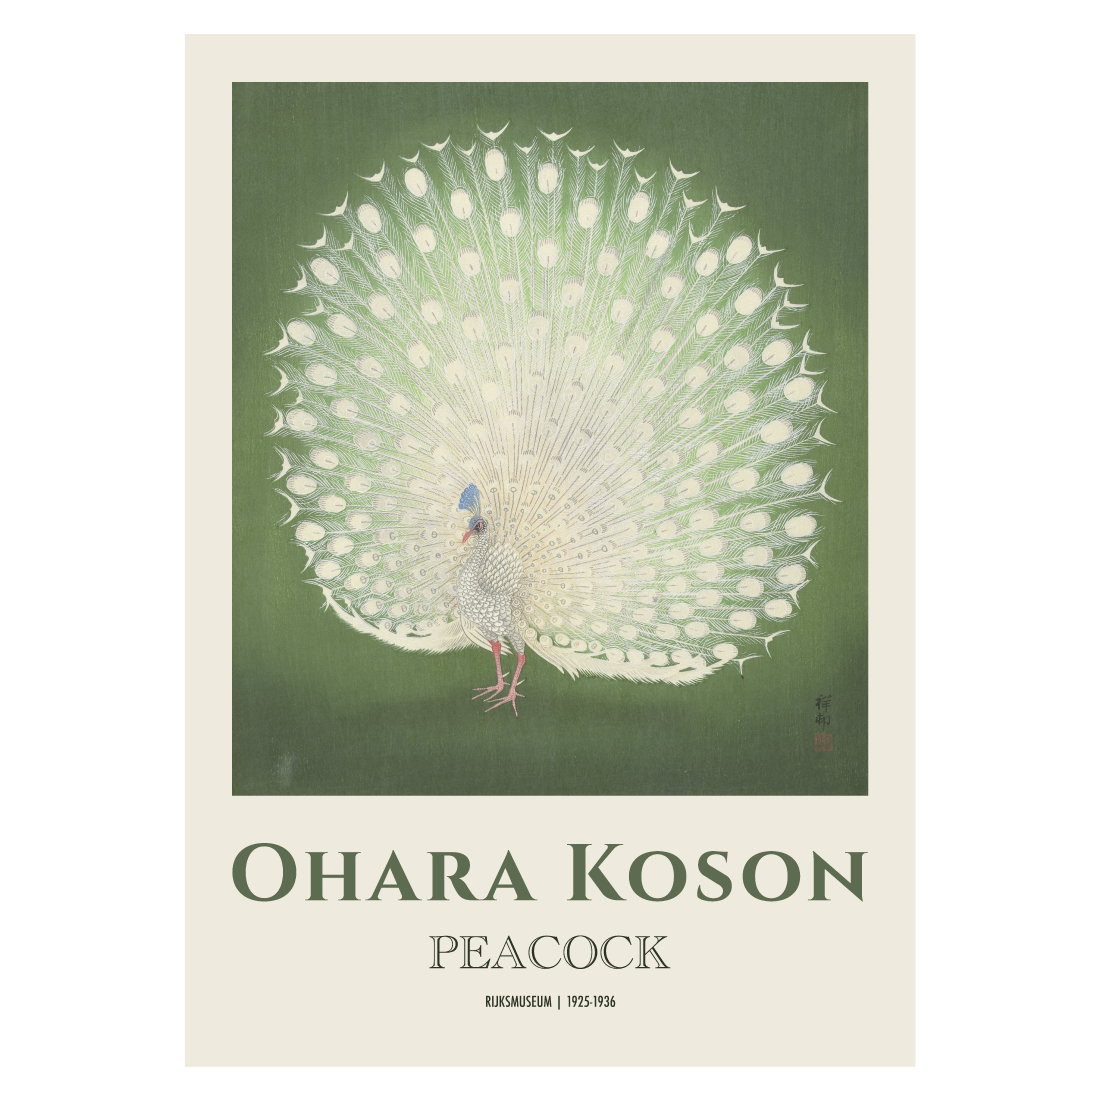 Kunstplakat med Ohara Koson "Peacock"